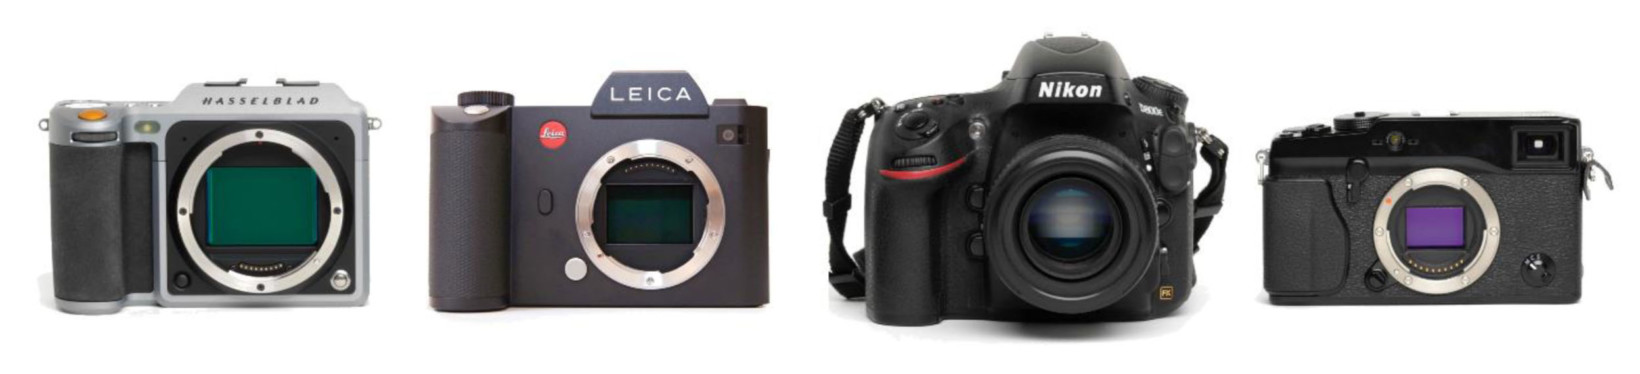 X1D, Leica SL, Nikon D800E, Fuji X-Pro 1